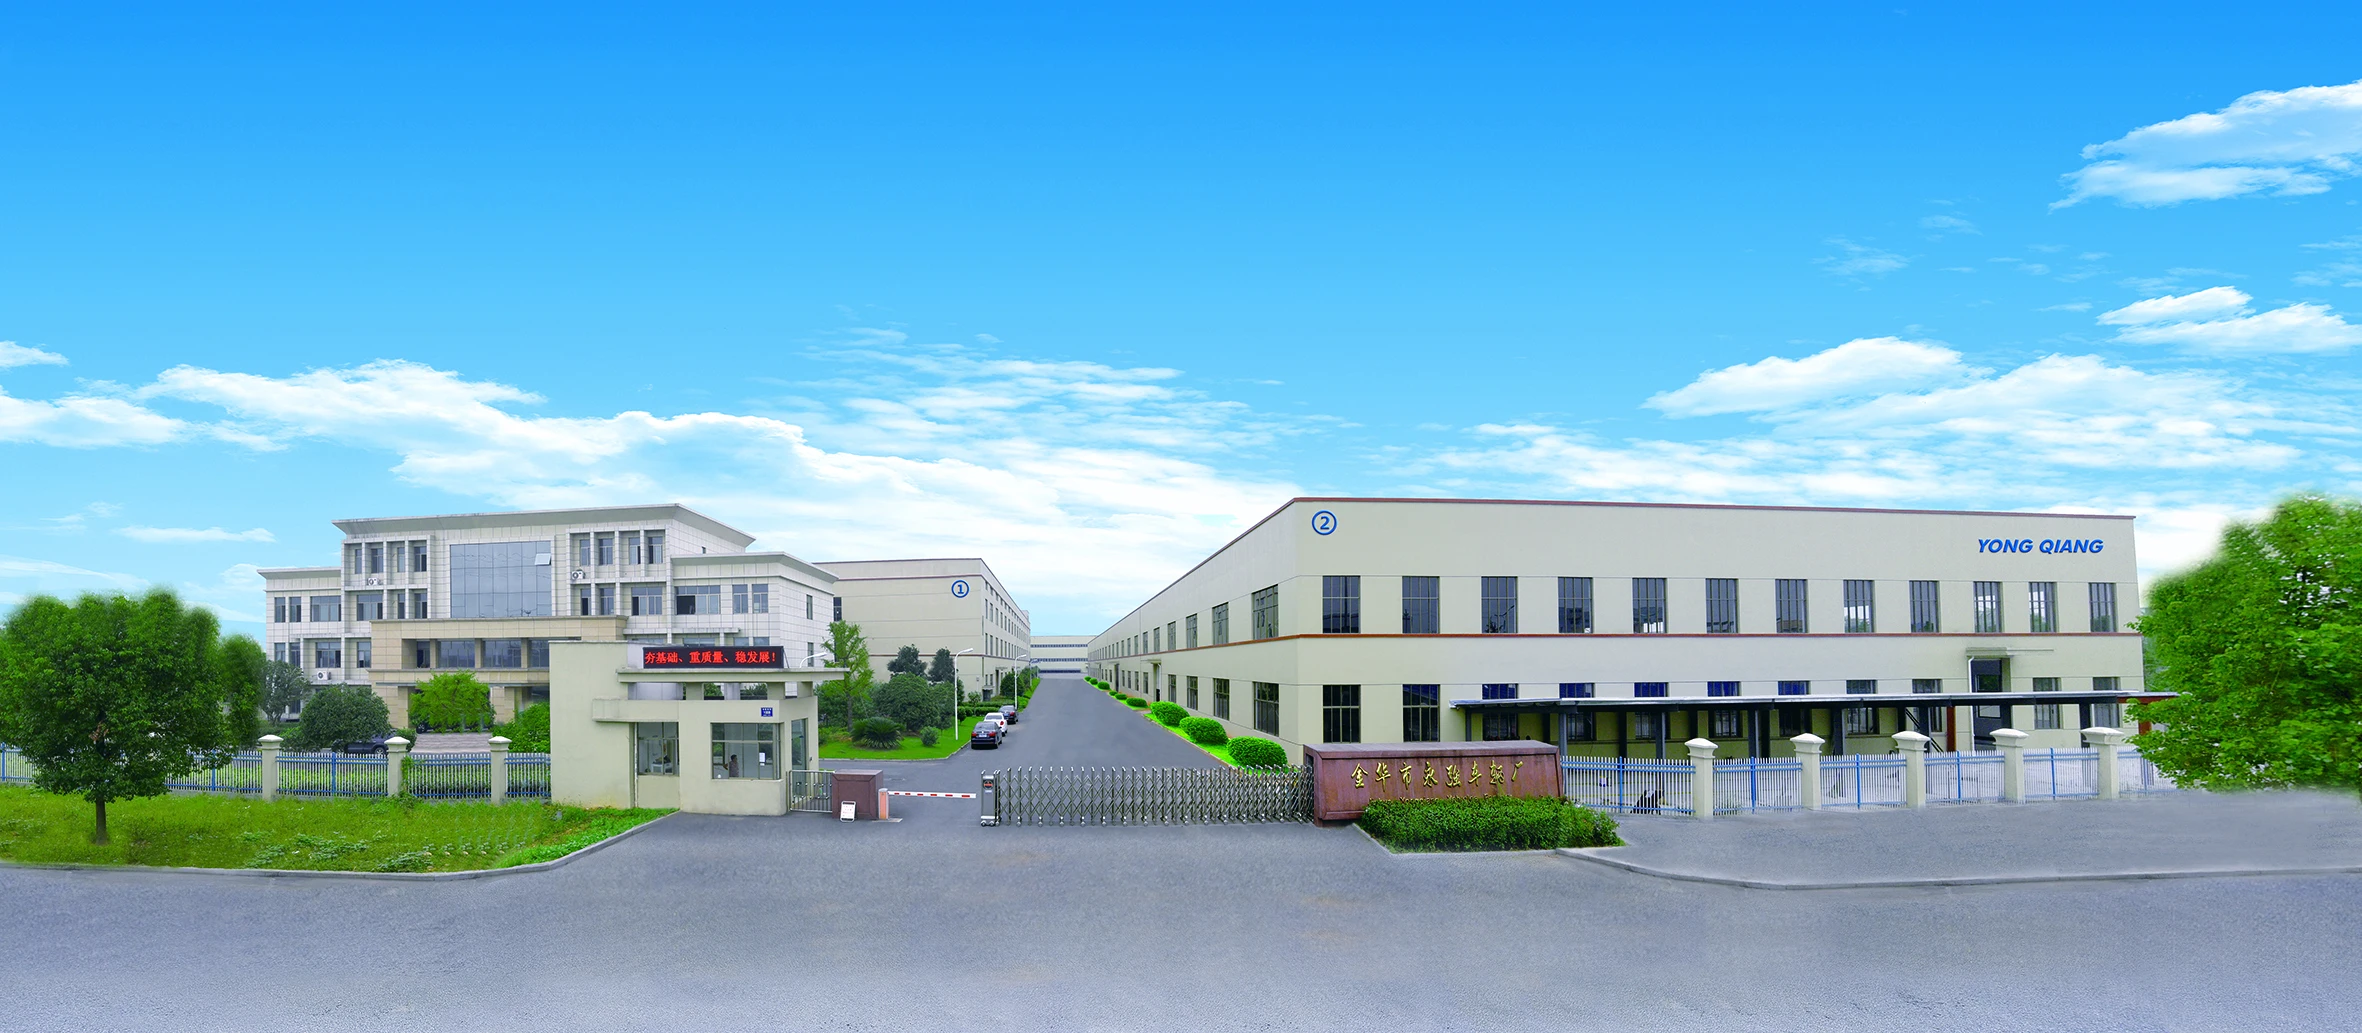 yongqiang Factory